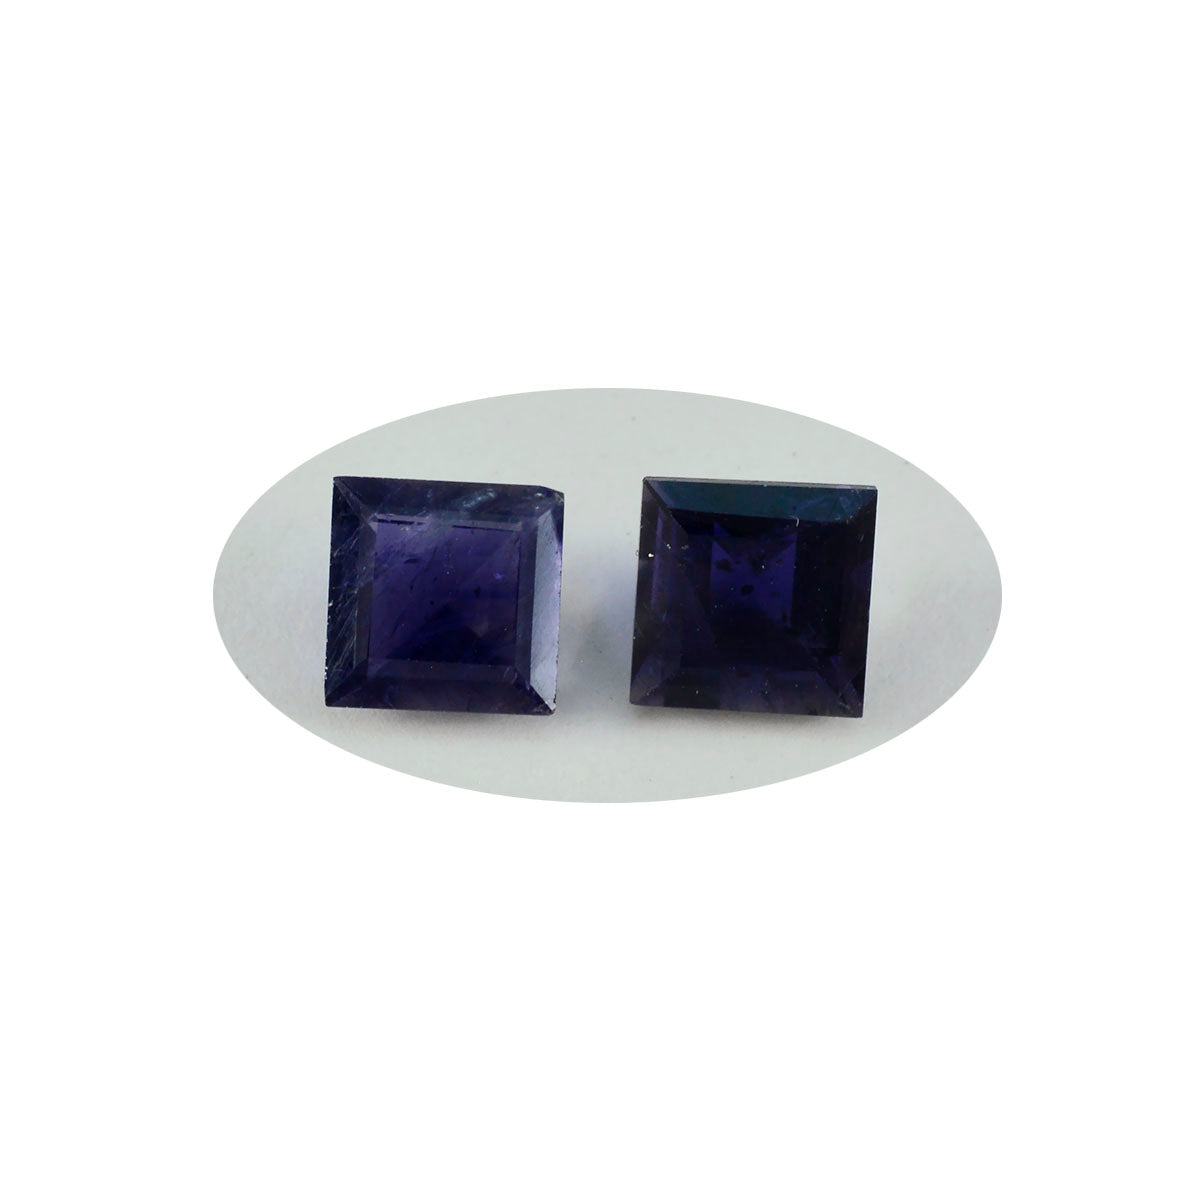 Riyogems 1 Stück blauer Iolith, facettiert, 13 x 13 mm, quadratische Form, attraktive Qualitätsedelsteine